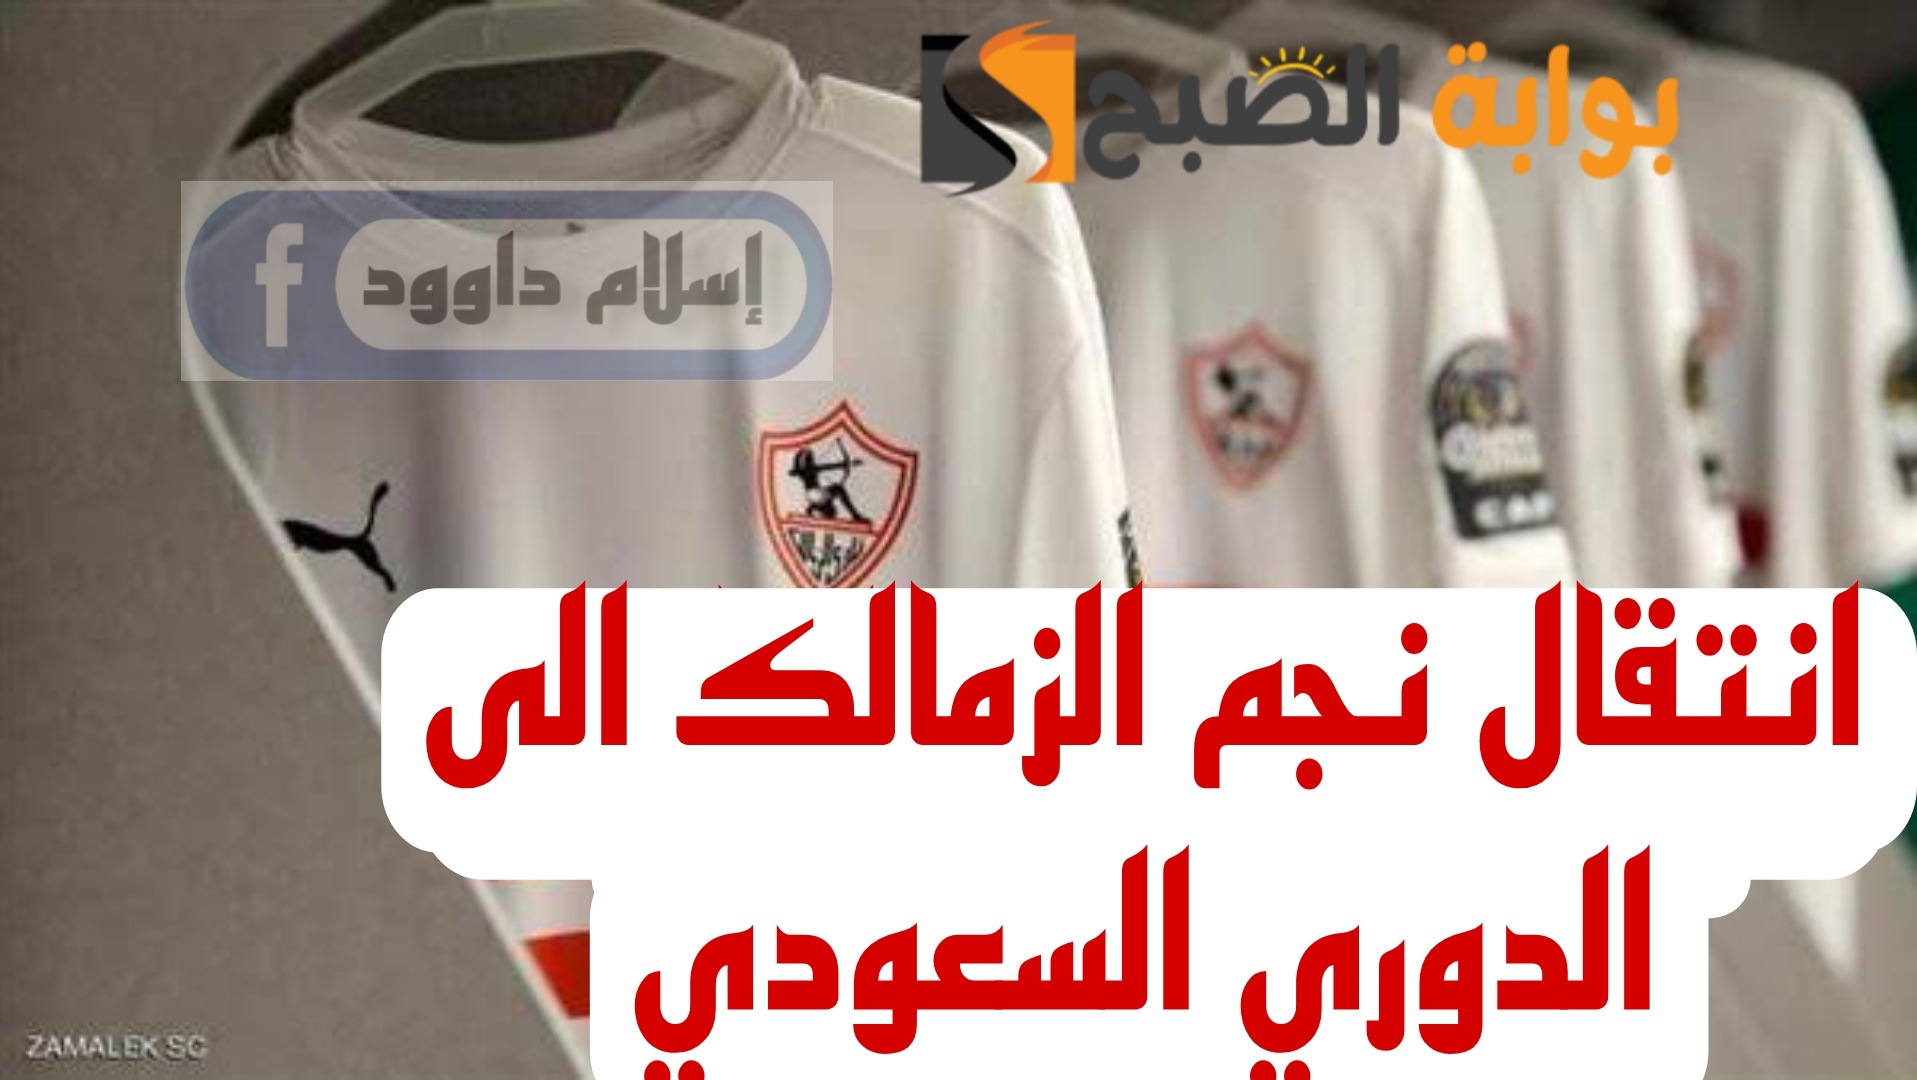 مفاجأة مدوية بشأن احتراف نجم نادي الزمالك إلى الدوري السعودي..!!